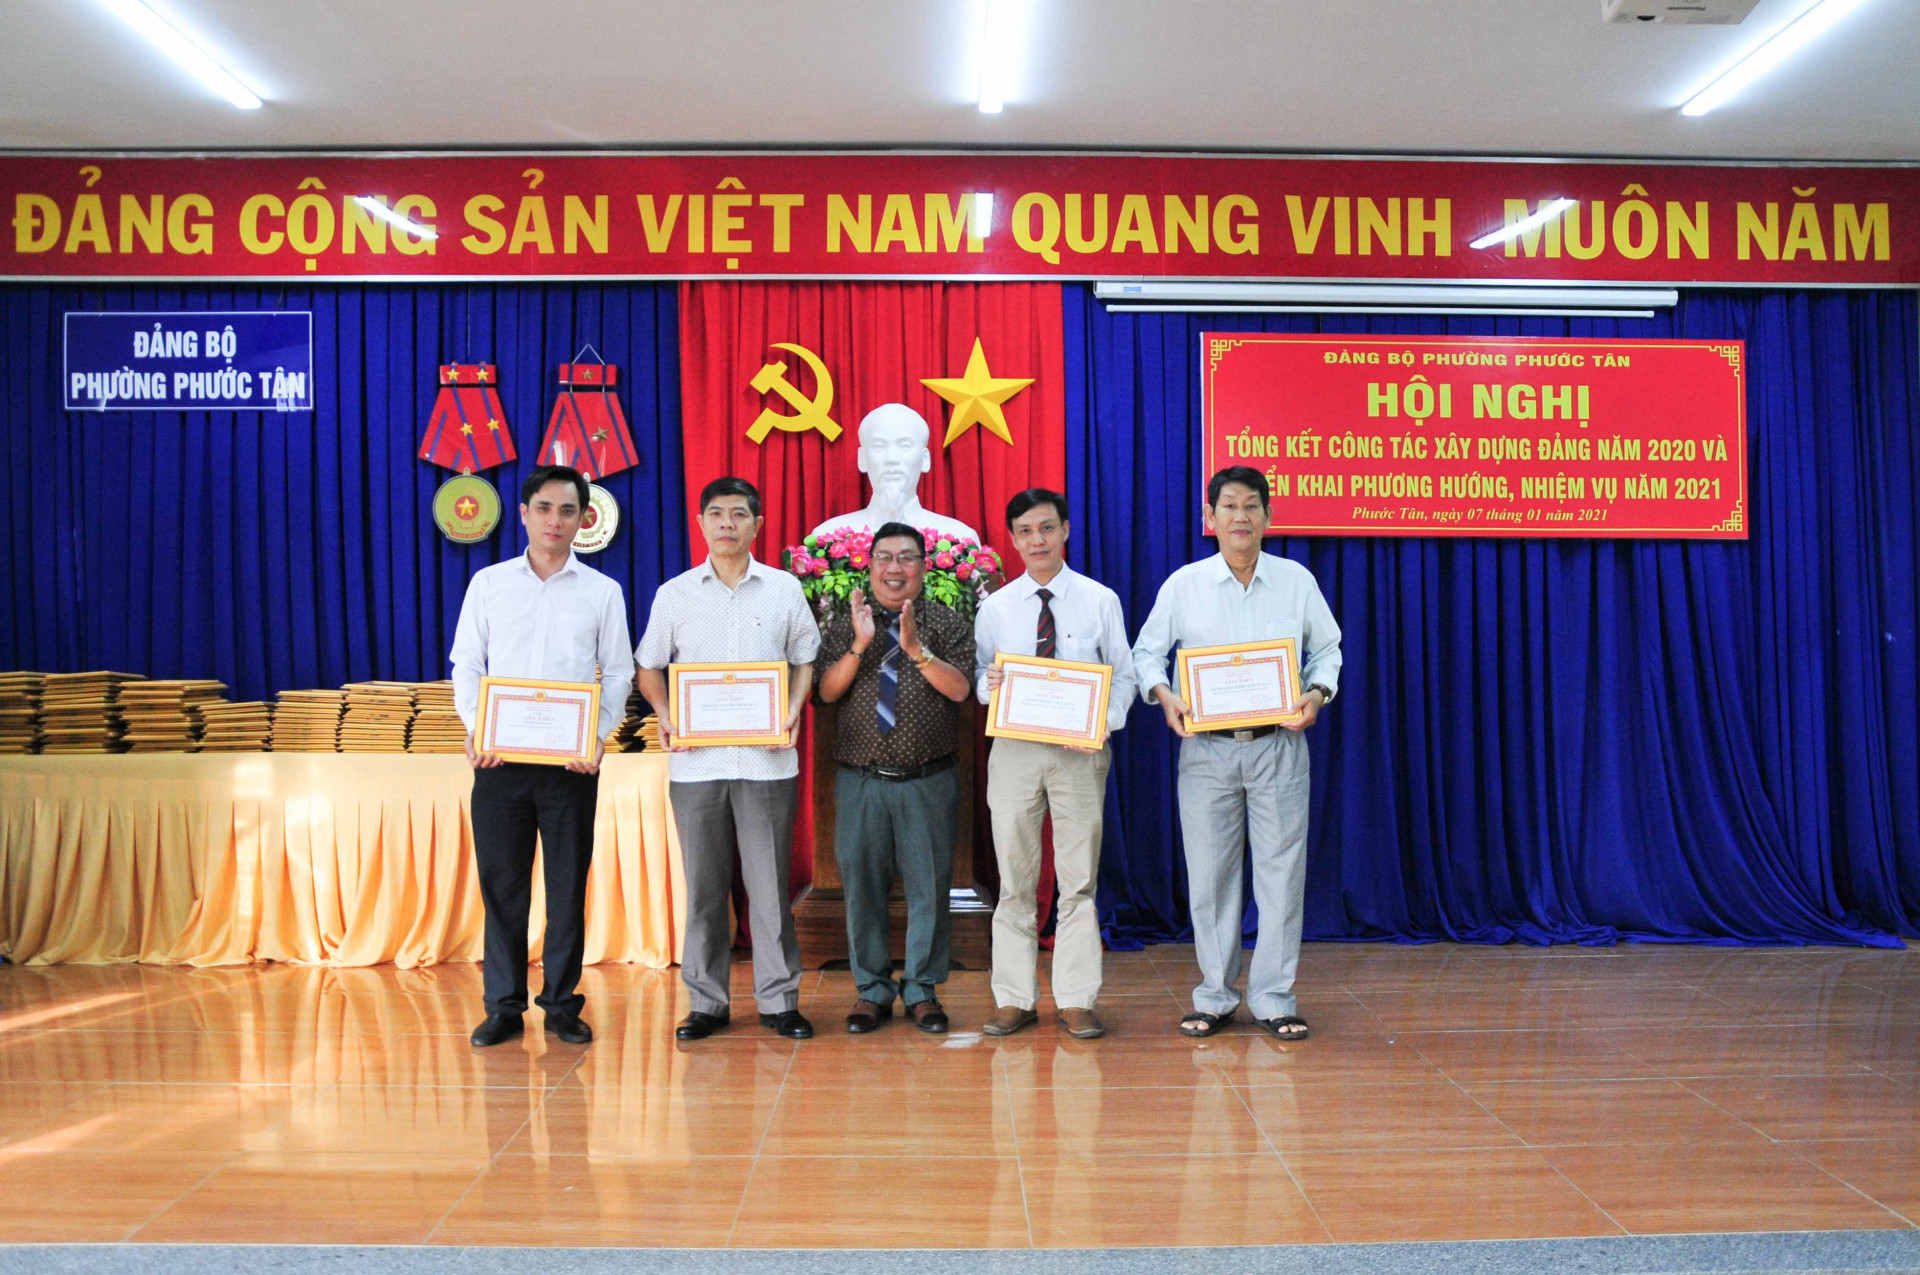 Đảng uỷ phường Phước Tân khen thưởng các tập thể xuất sắc trong công tác xây dựng Đảng